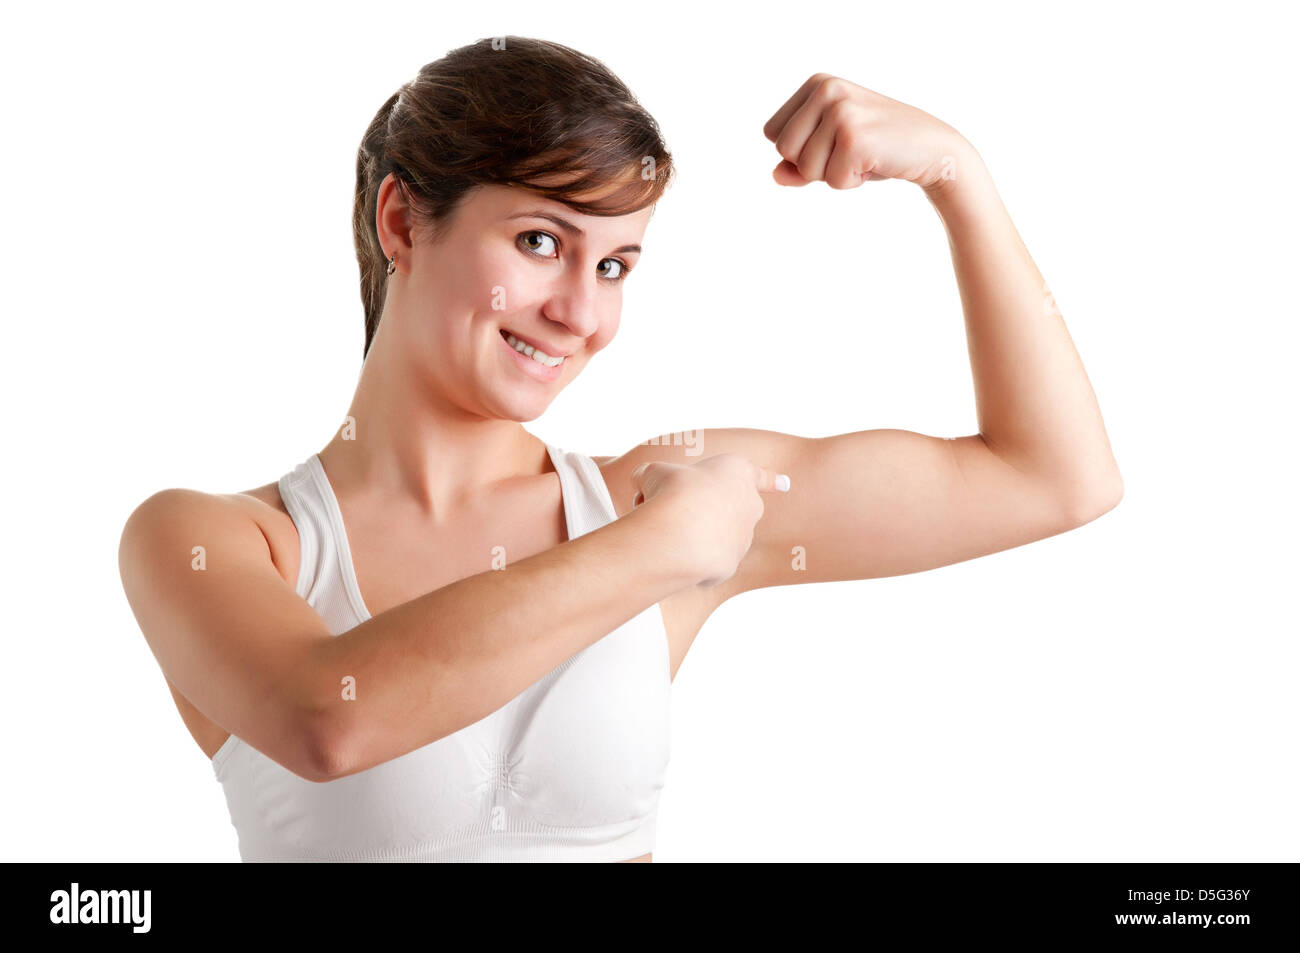 Femme en souriant et en montrant ses biceps après un entraînement, isolé dans un fond blanc Banque D'Images